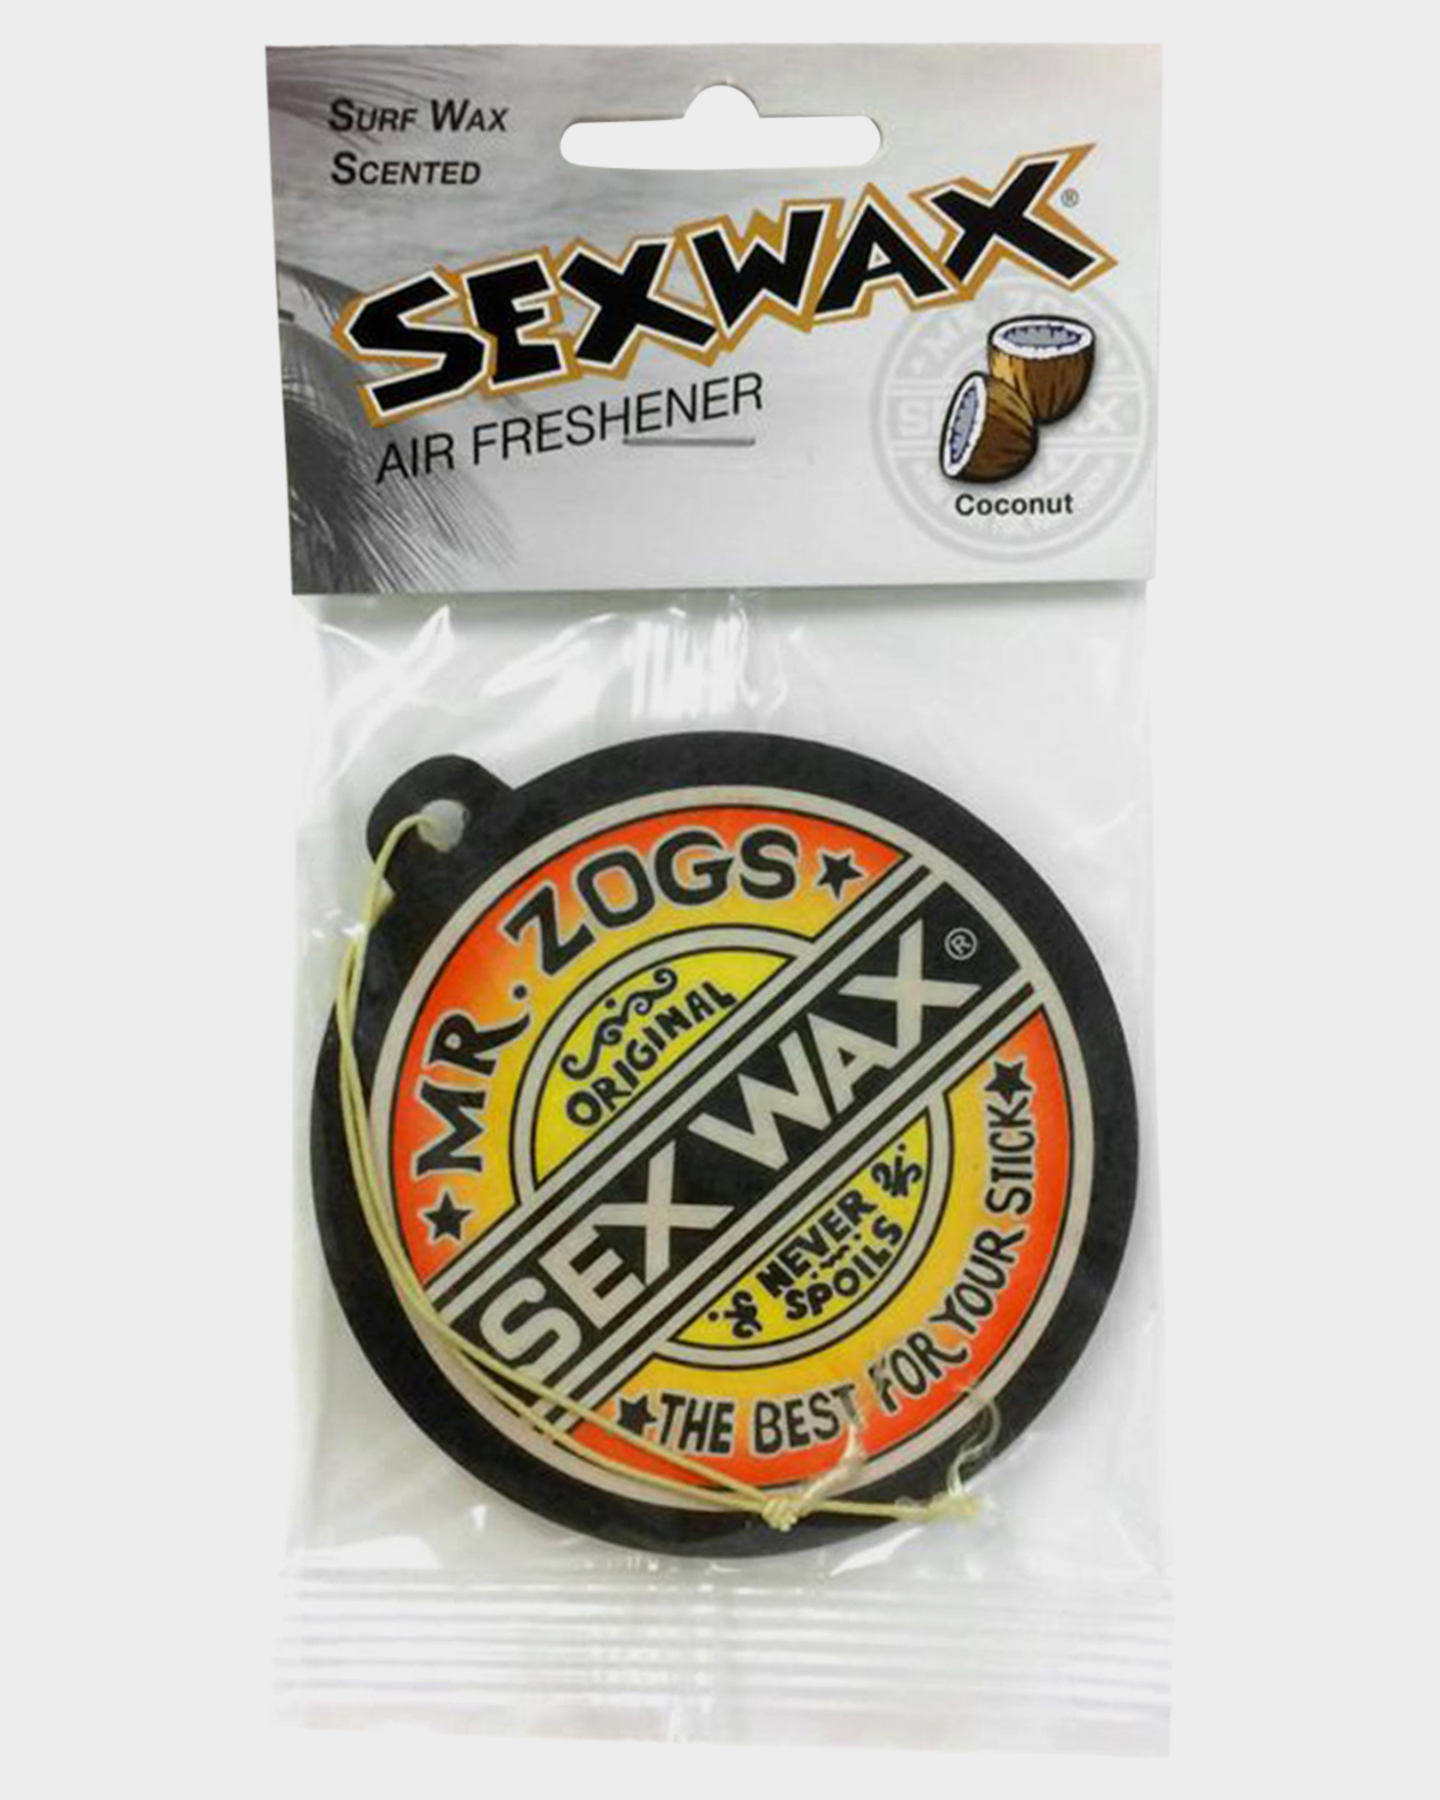 Mr. Zogs Original Sexwax - Cold Water Temperature Coconut Scented (White)